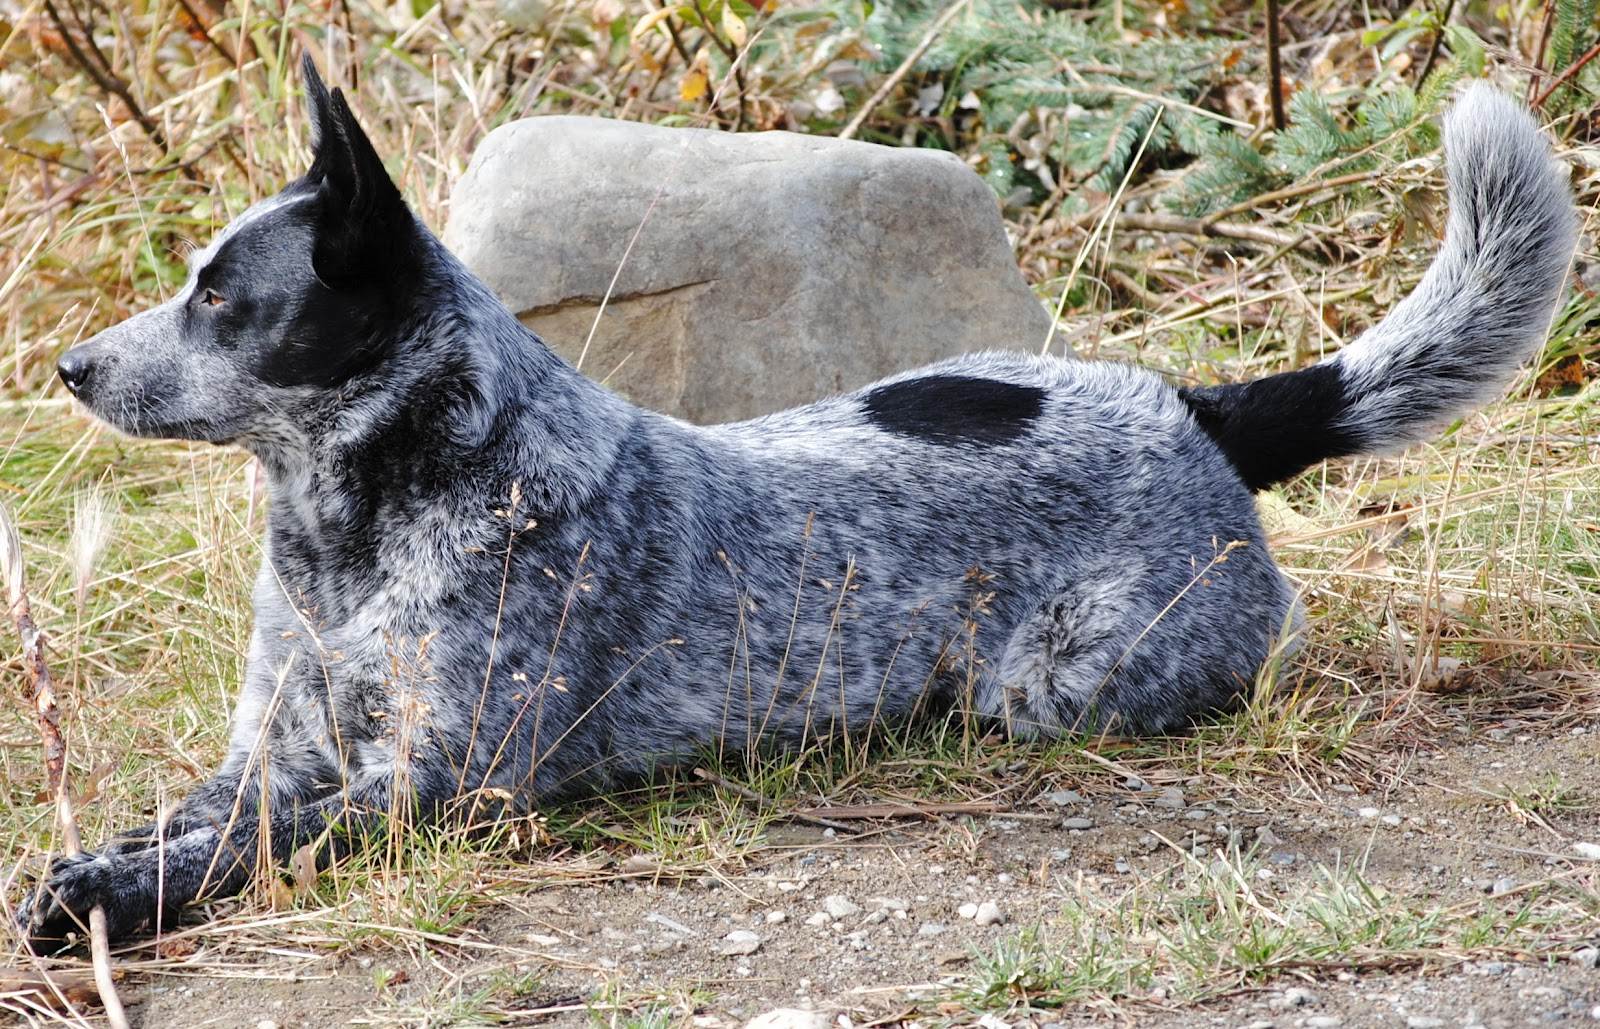 Австралийская пастушья собака: характеристика породы